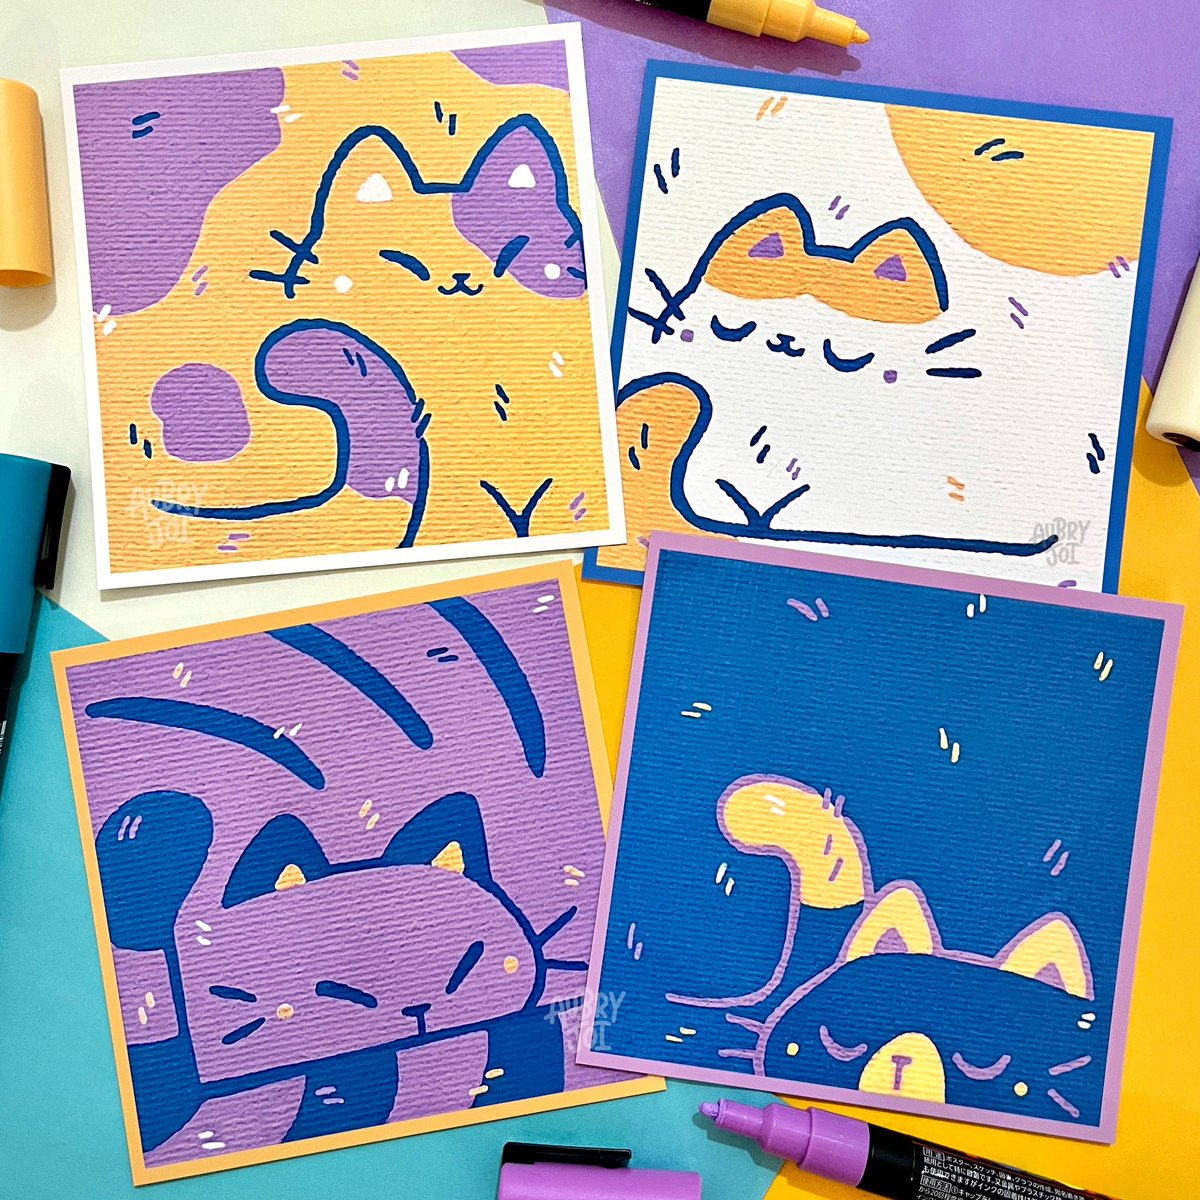 Cube cat prints! 🐱 